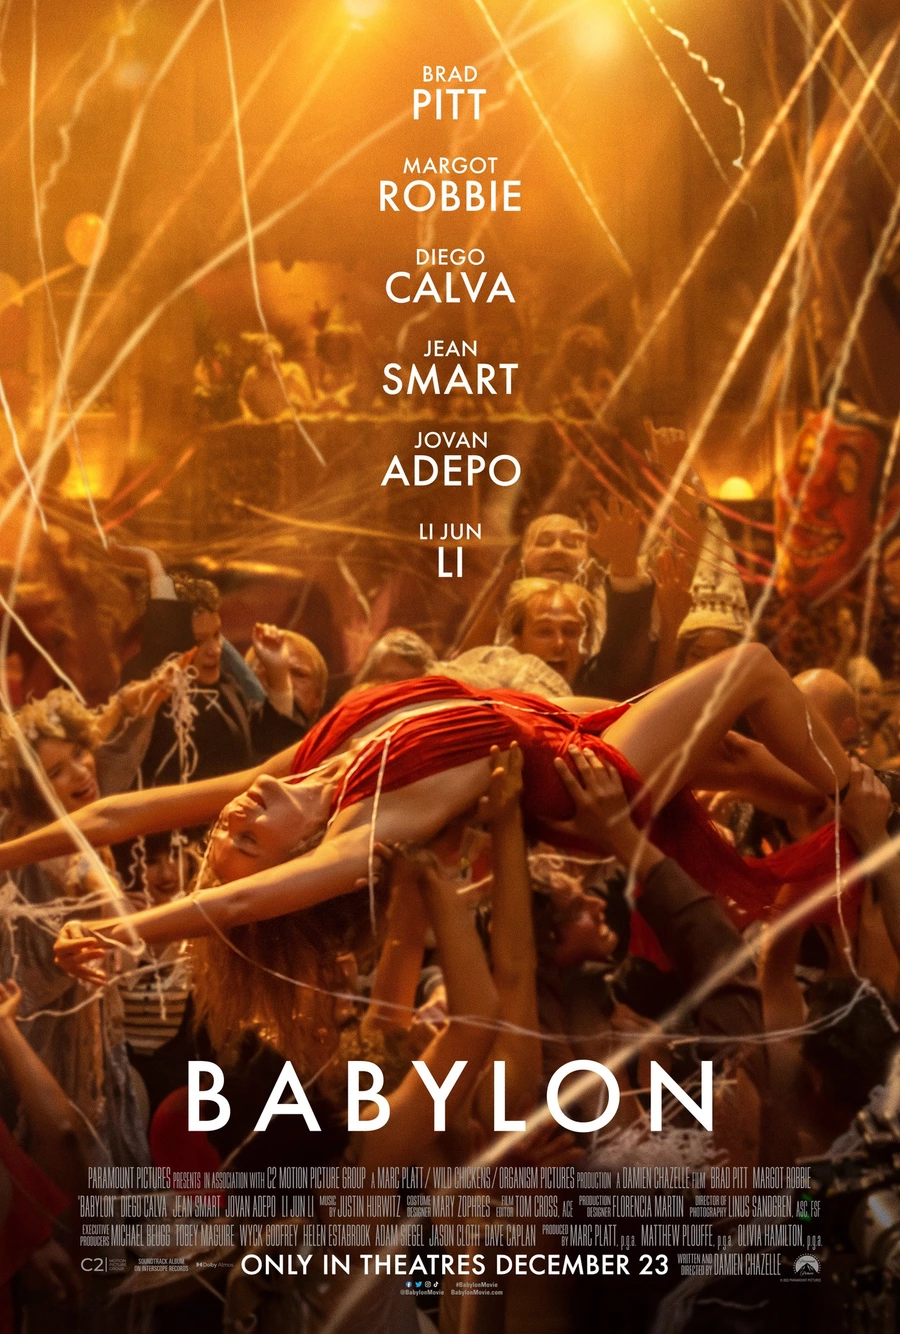 Neues Plakat für den Film Babylon von Damien Chazelle mit Brad Pitt, Margot Robbie und Diego Calva in den Hauptrollen.. Es ist eine Geschichte von ungezügeltem Ehrgeiz und schockierendem Exzess, in der verschiedene Charaktere in einer Zeit zügelloser Dekadenz und Verderbtheit im frühen Hollywood Höhepunkte erreichen und atemberaubende Abstürze erleiden.

Ab 19. Januar in den Kinos.